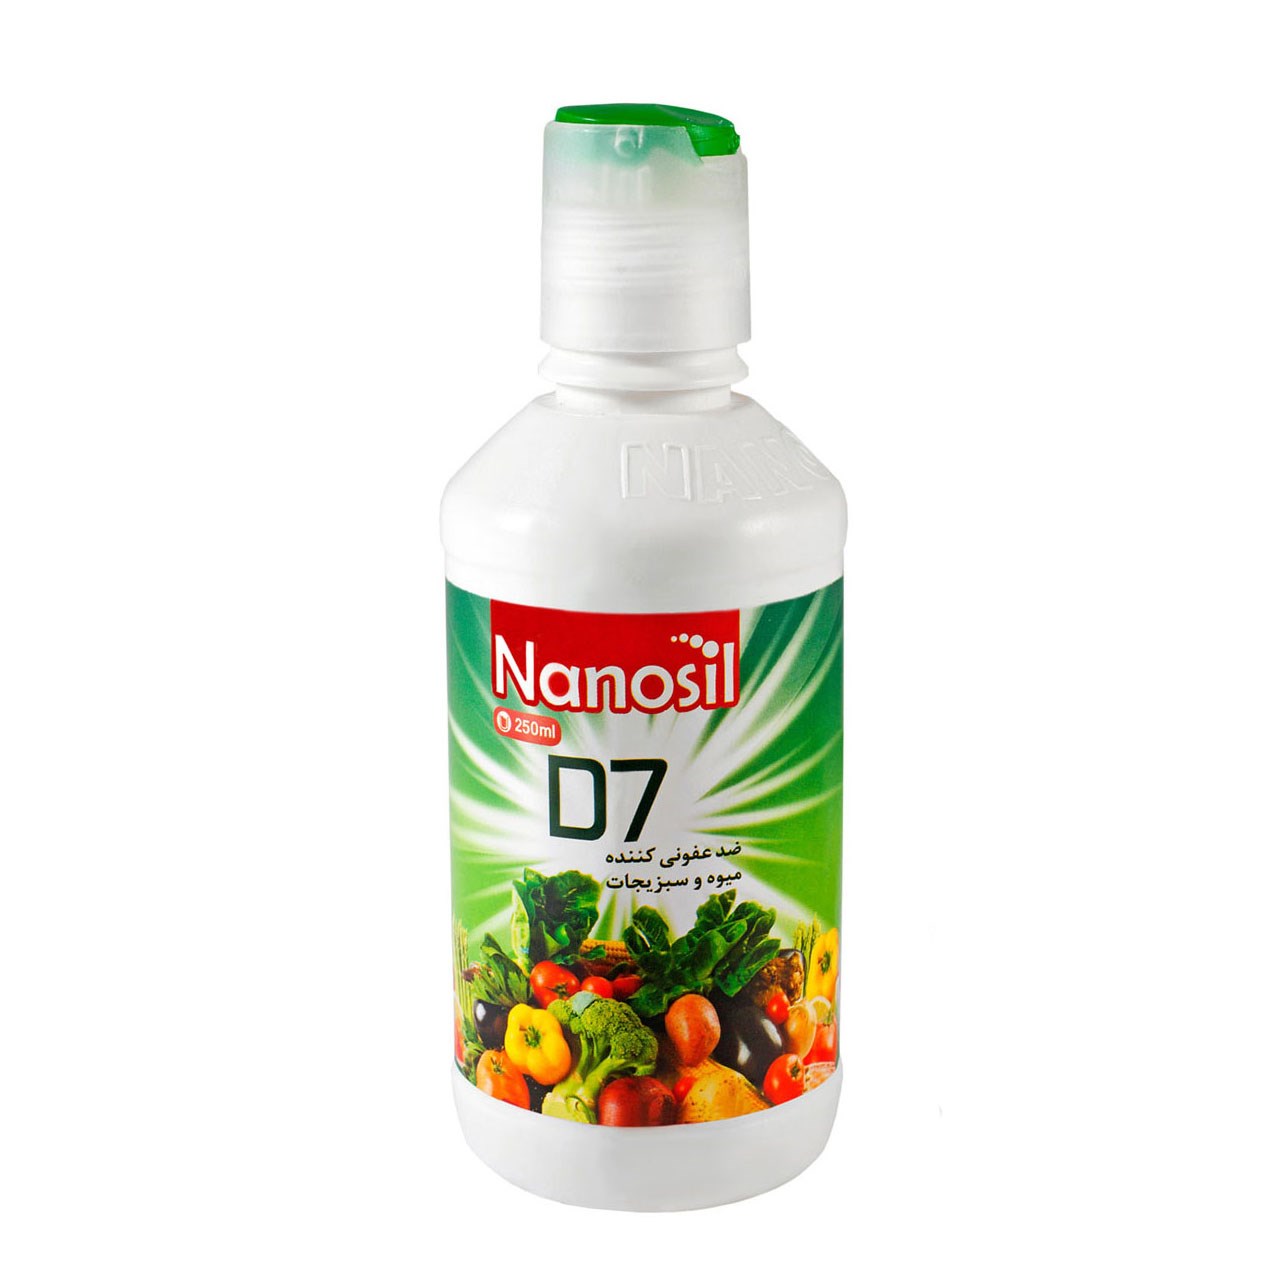 ضد عفونی کننده میوه و سبزیجات نانوسیل مدل D7 حجم 250 میلی لیتر بسته 24 عددی